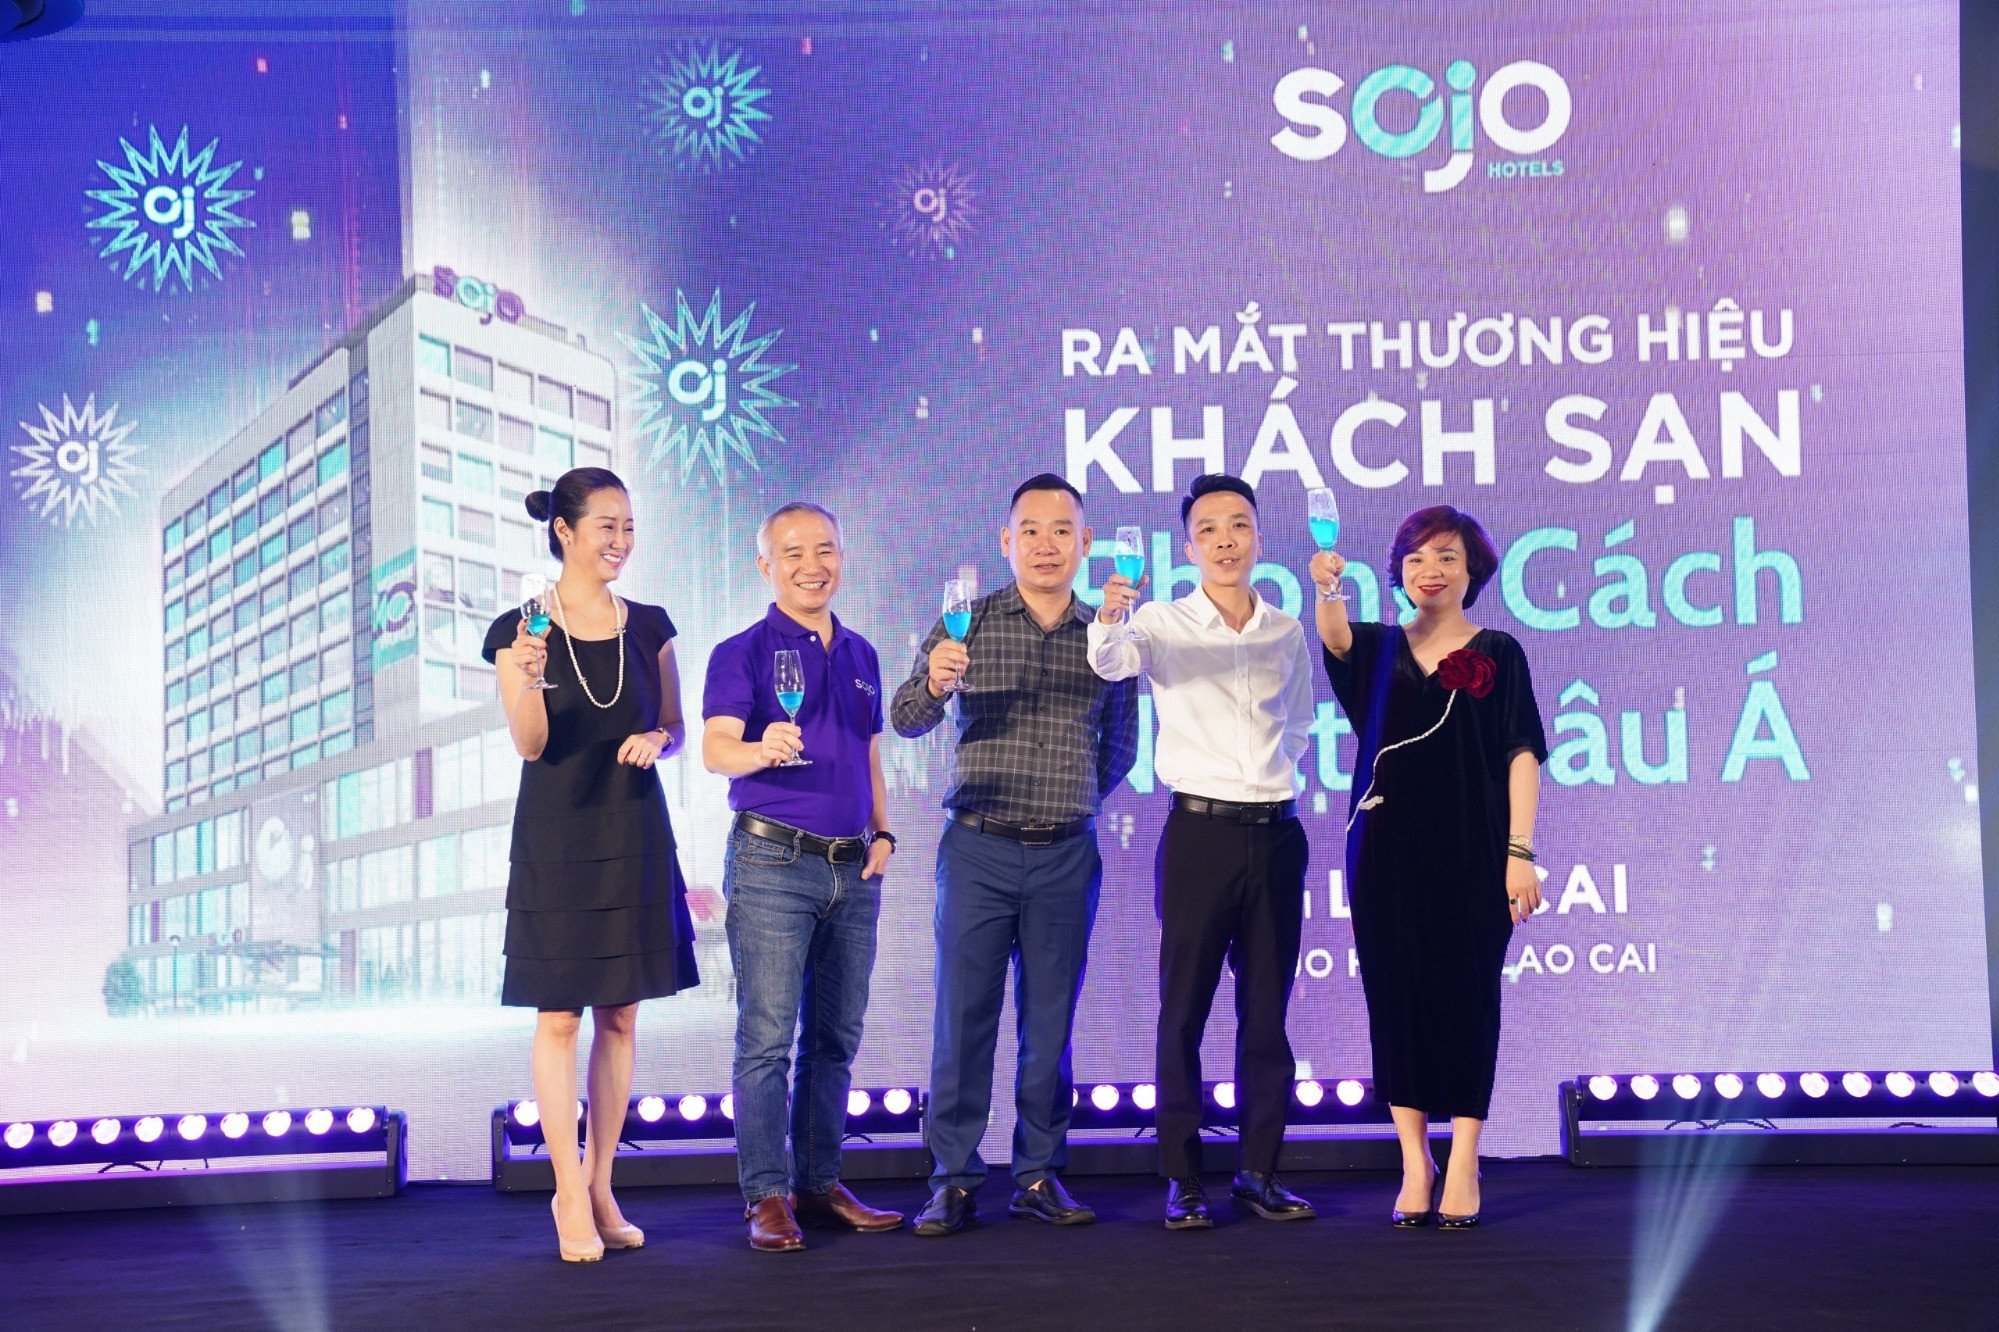 Sojo Hotel mở thêm chi nhánh ở Lào Cai